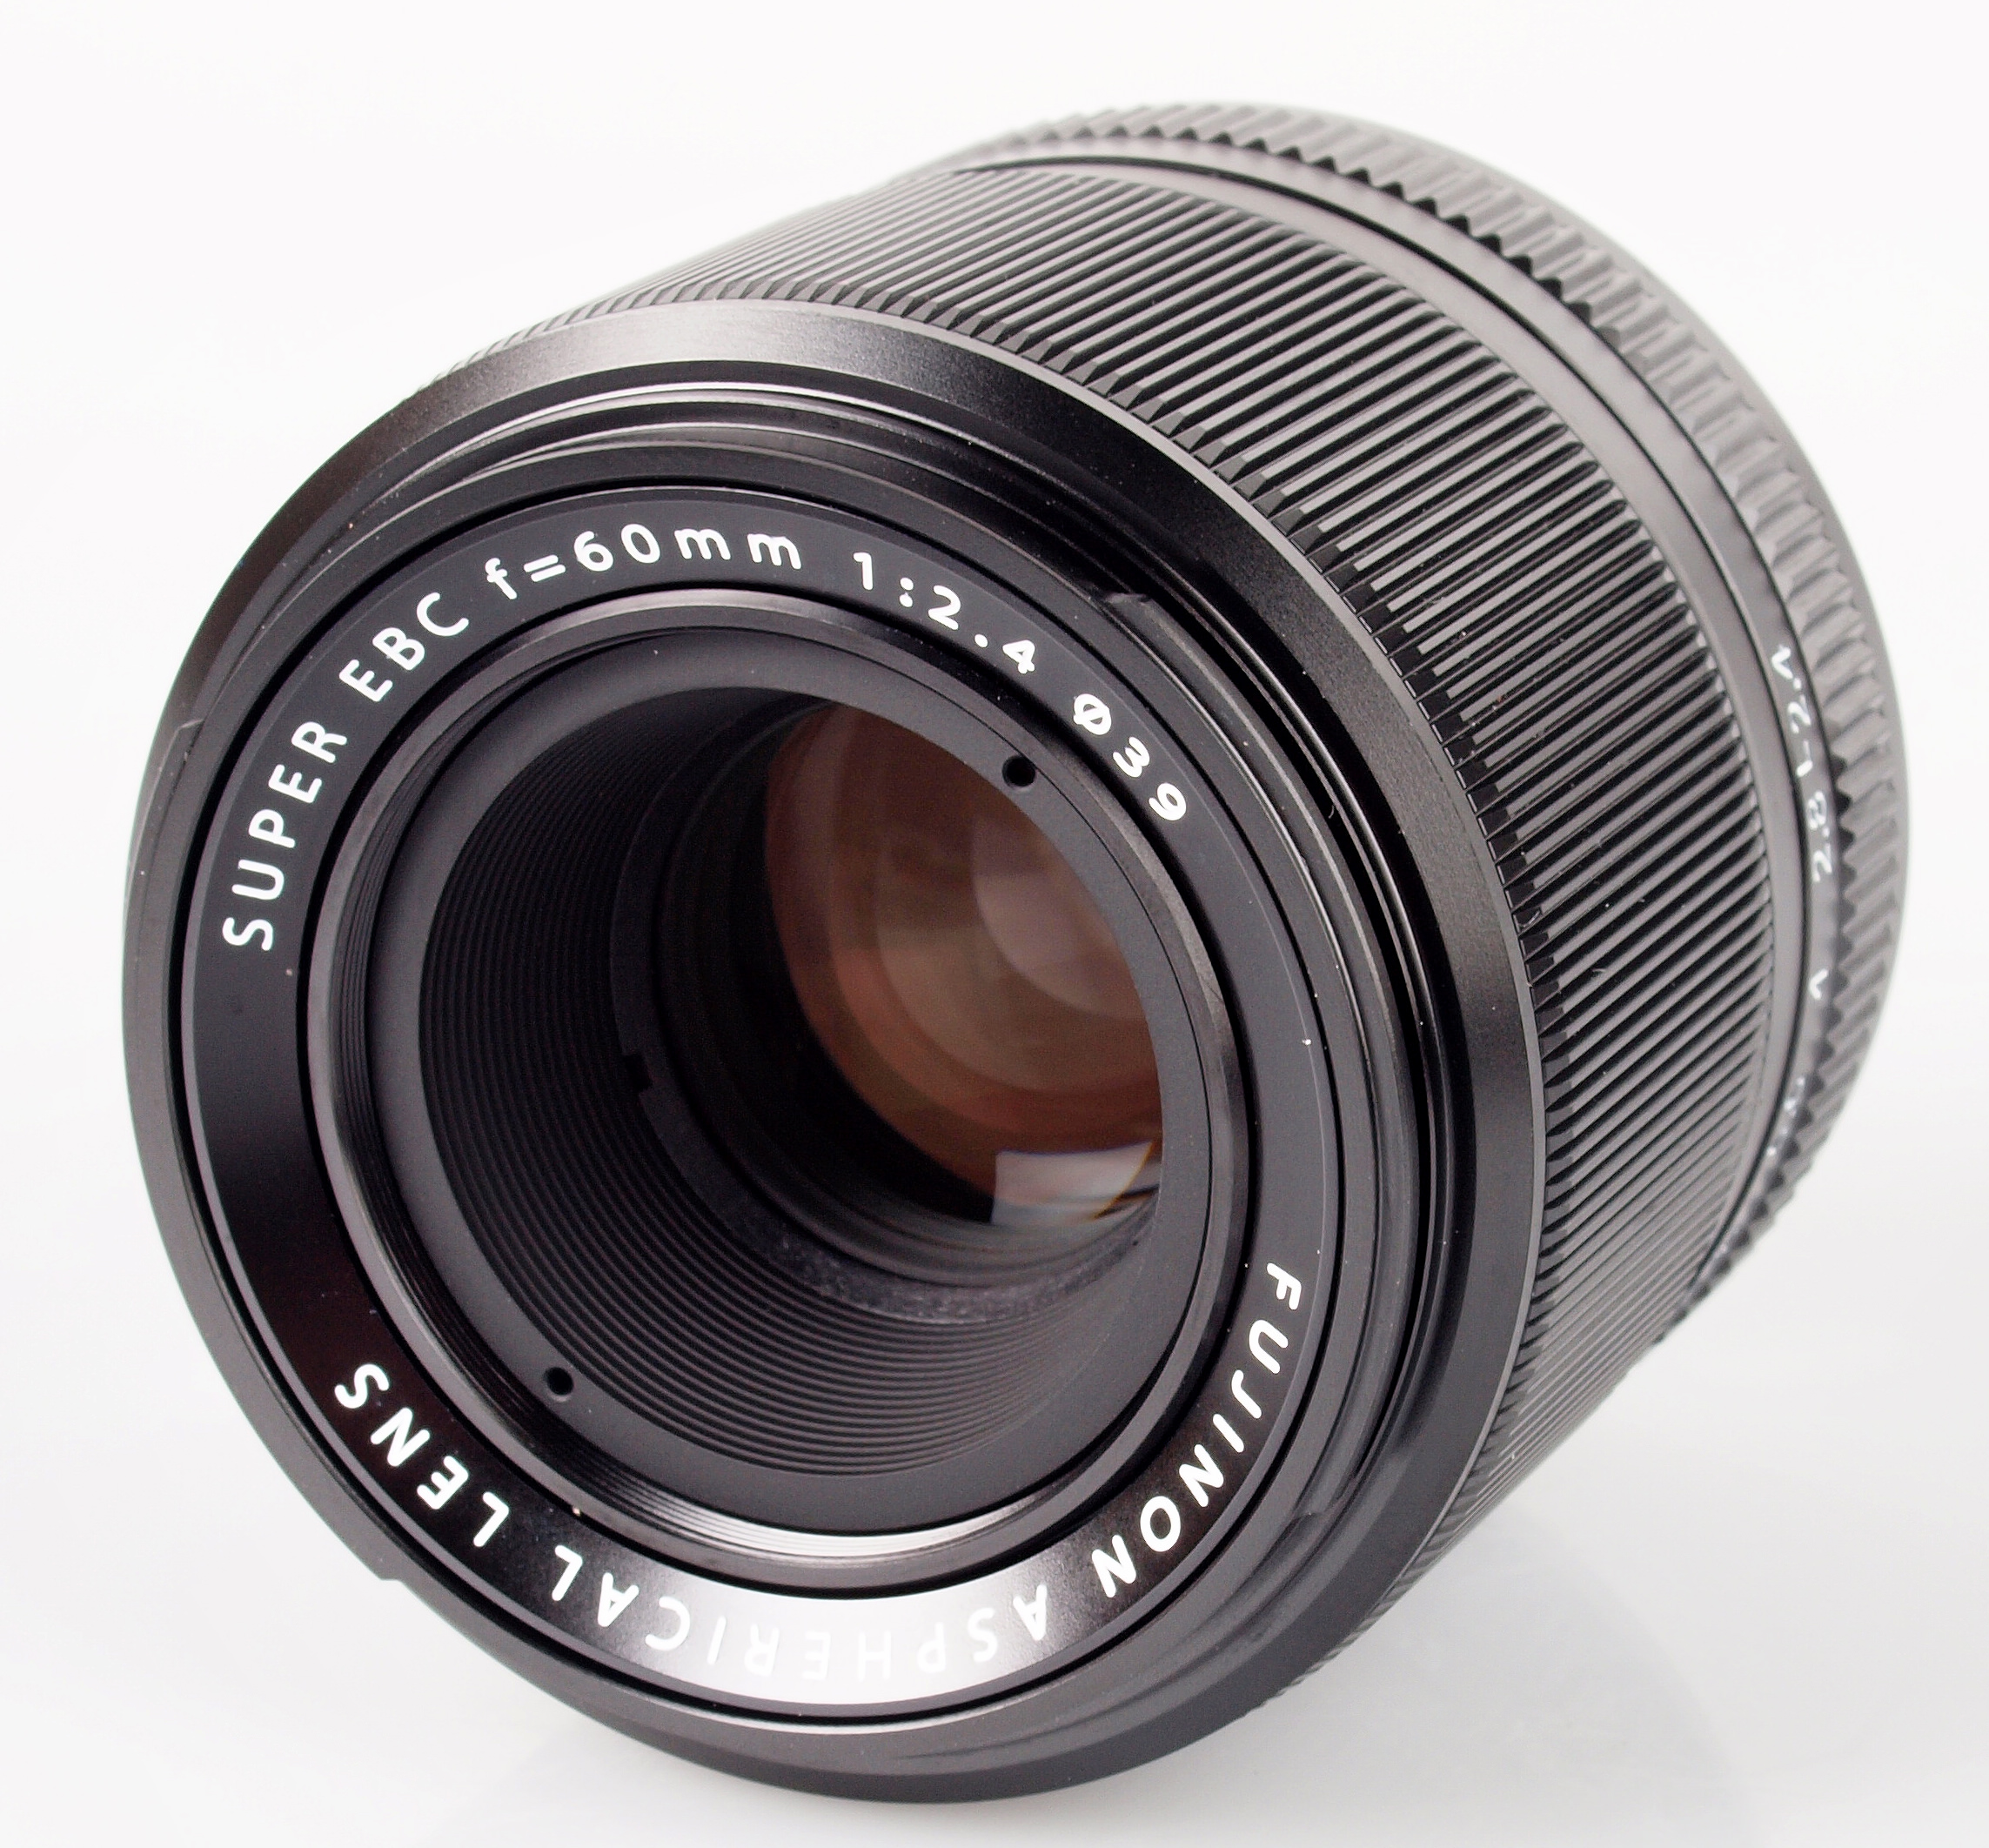 Fujifilm Fujinon XF 60mm f/2.4 R Macro Lens Review